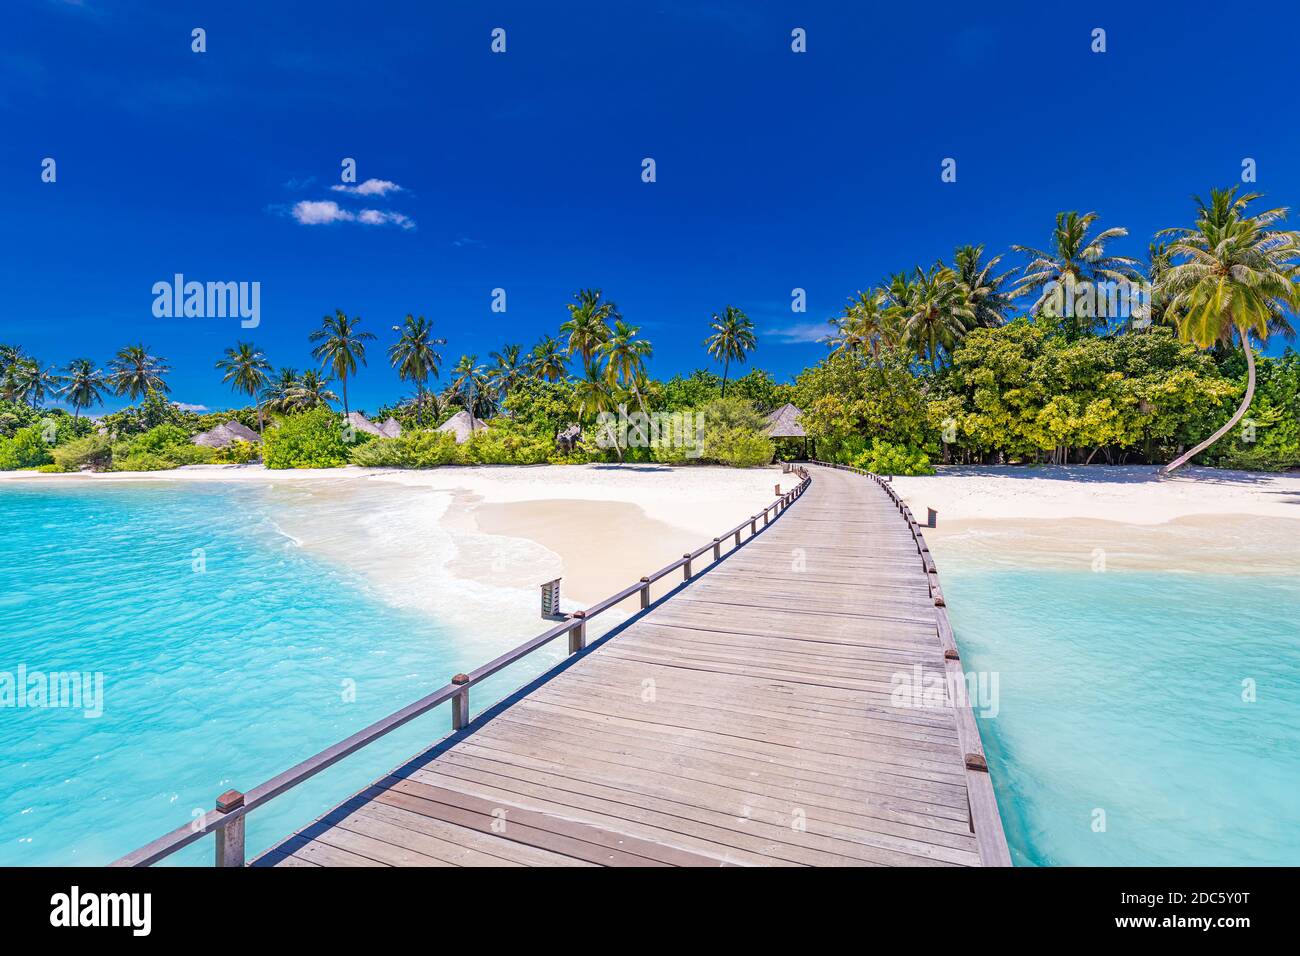 Maldivas complejo turístico de playa paisaje panorámico. Playa tropical de vacaciones. Largo muelle de madera, embarcadero en la isla paradisíaca, palmeras, arena blanca, cielo azul Foto de stock